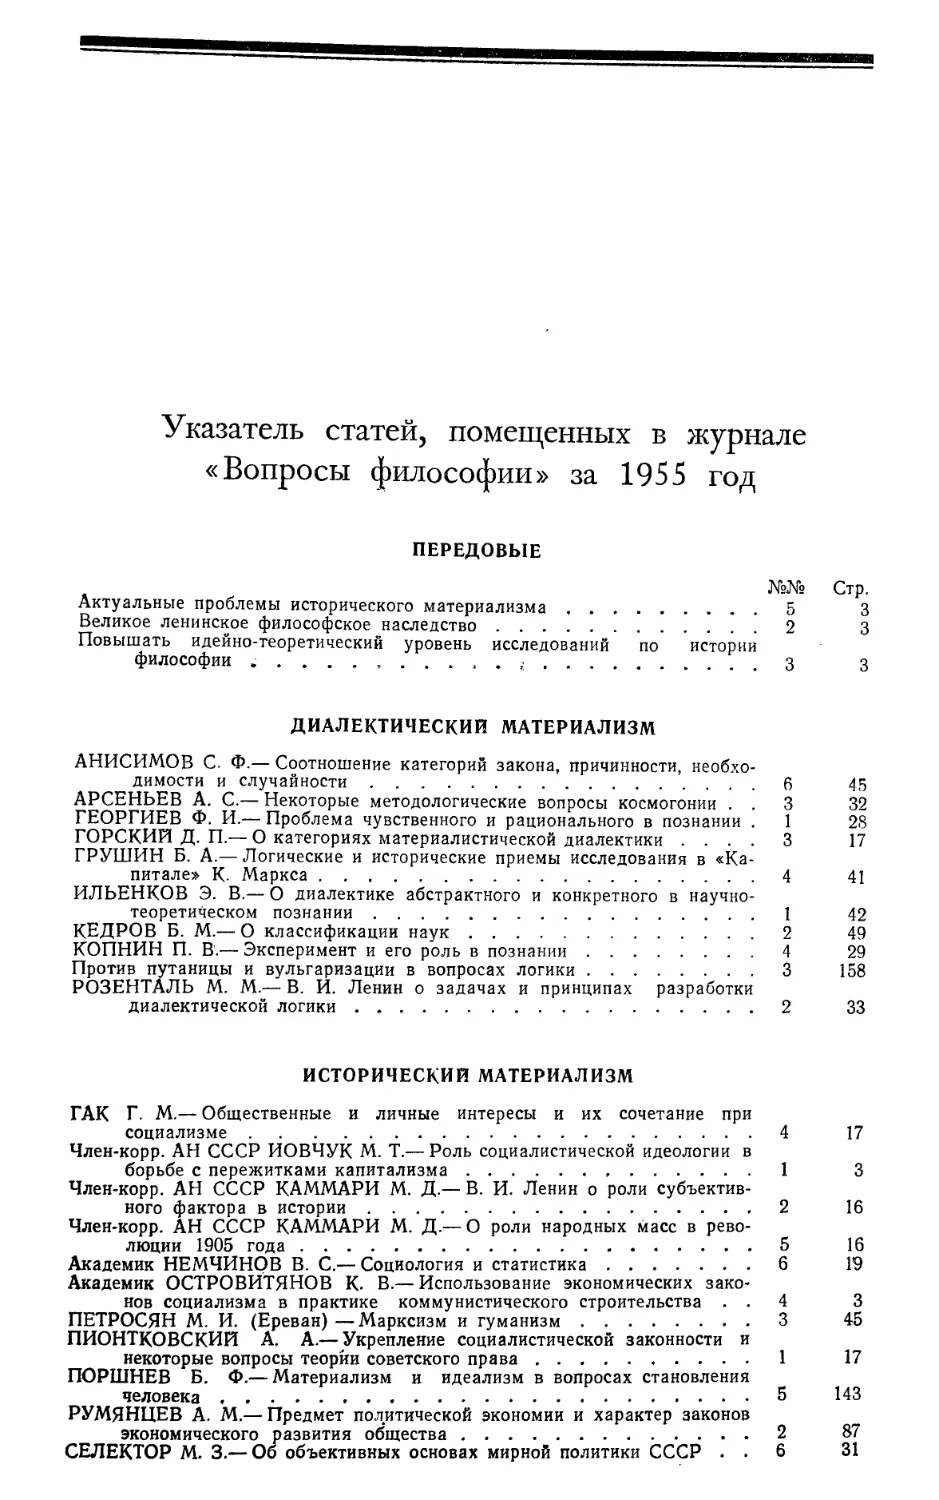 Указатель статей, помещенных в журнале «Вопросы философии» за 1955 год